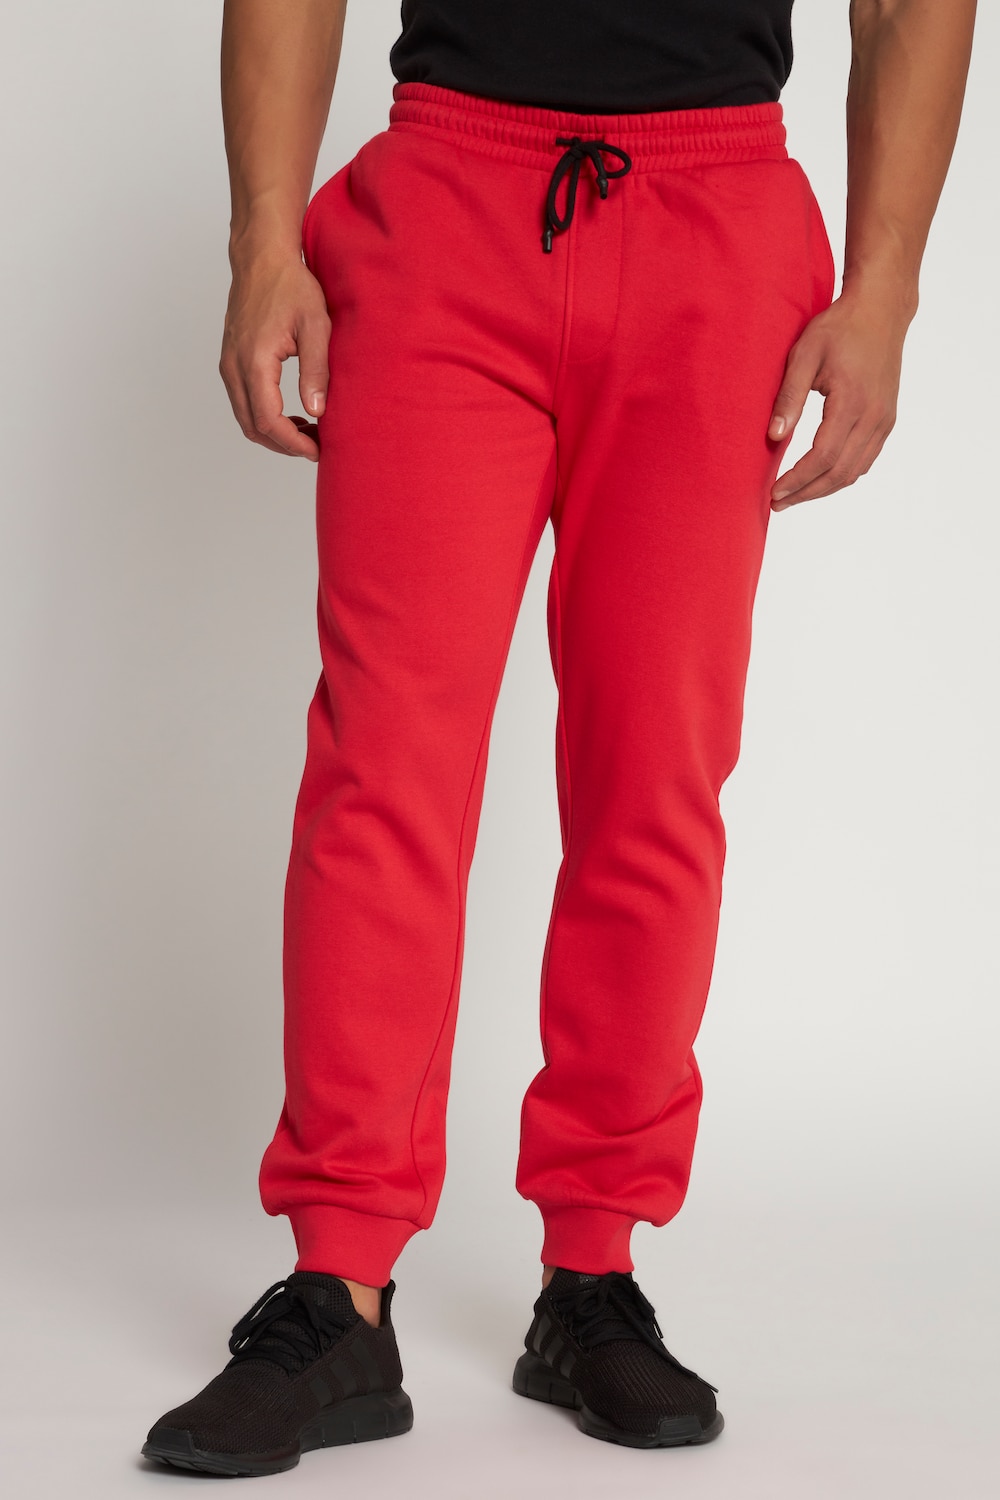 Große Größen Sweat-Hose, Herren, rot, Größe: 4XL, Baumwolle/Polyester, JP1880 von JP1880